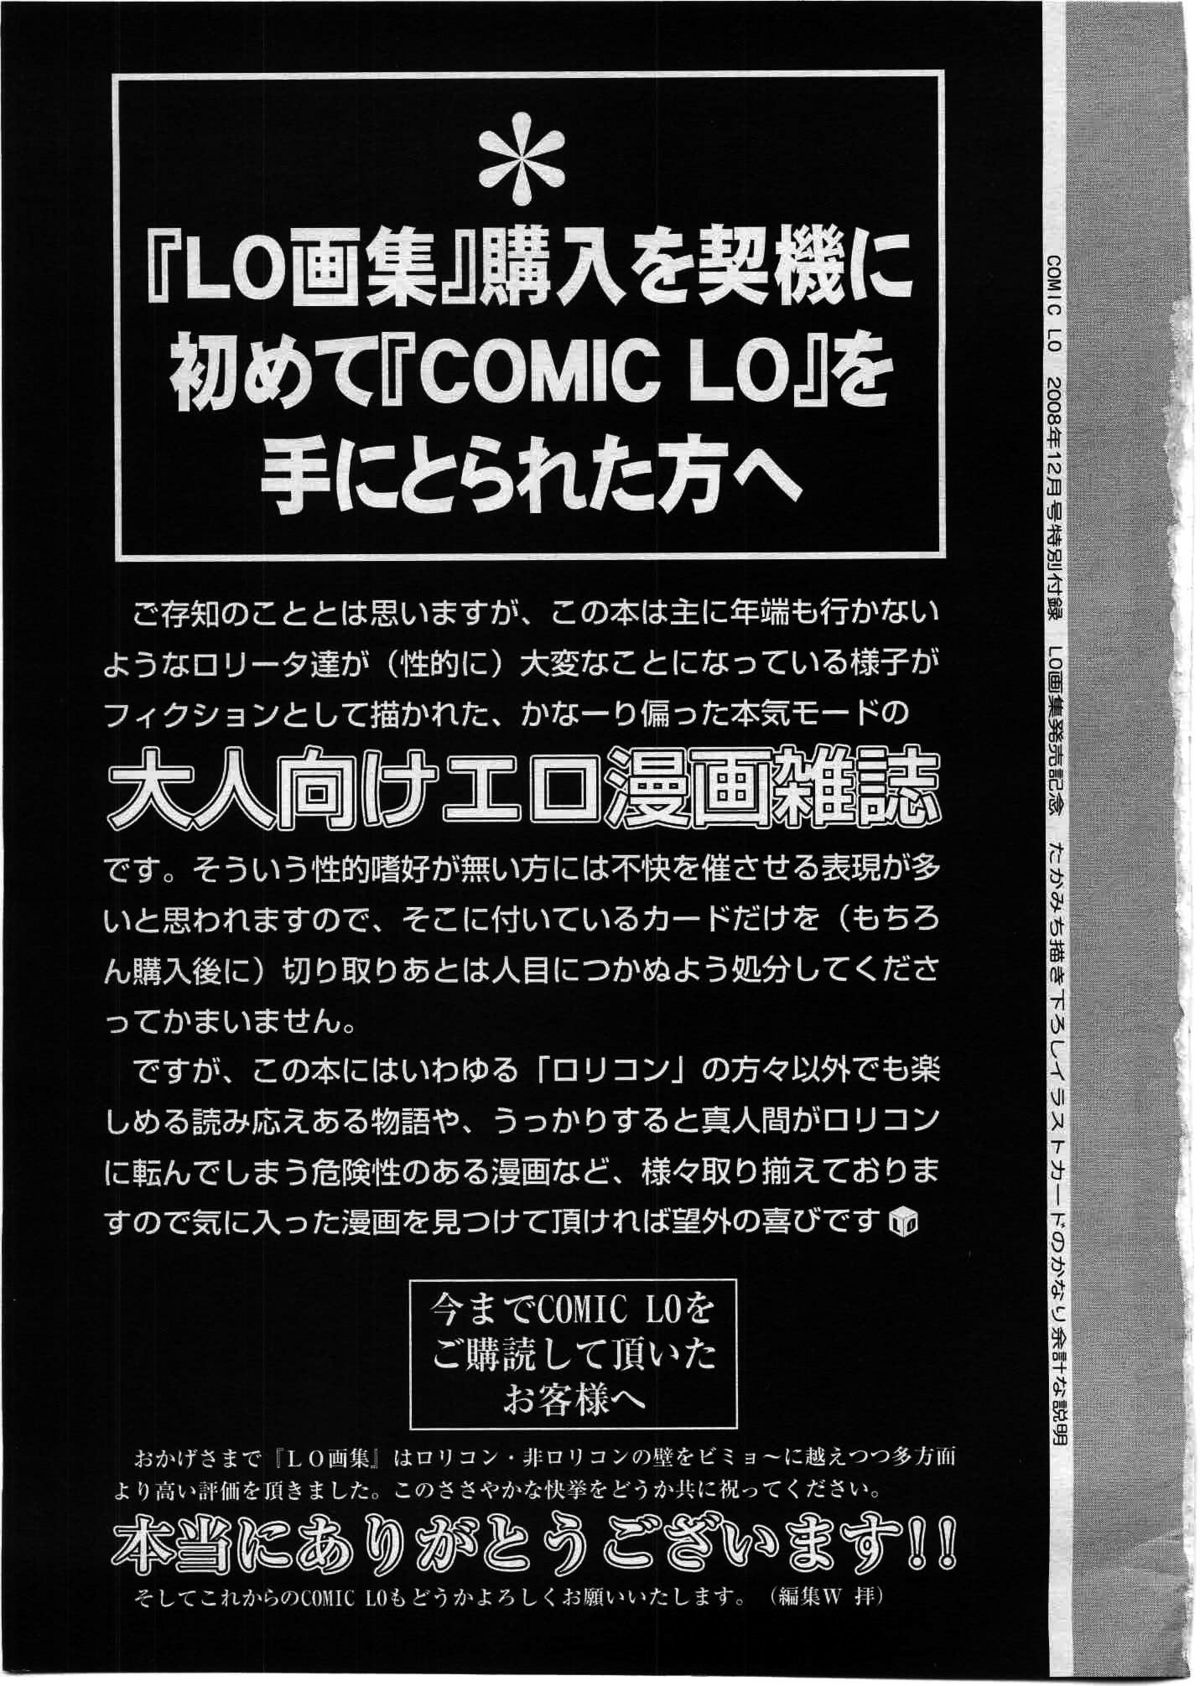 COMIC LO 2008年12月号 Vol.57